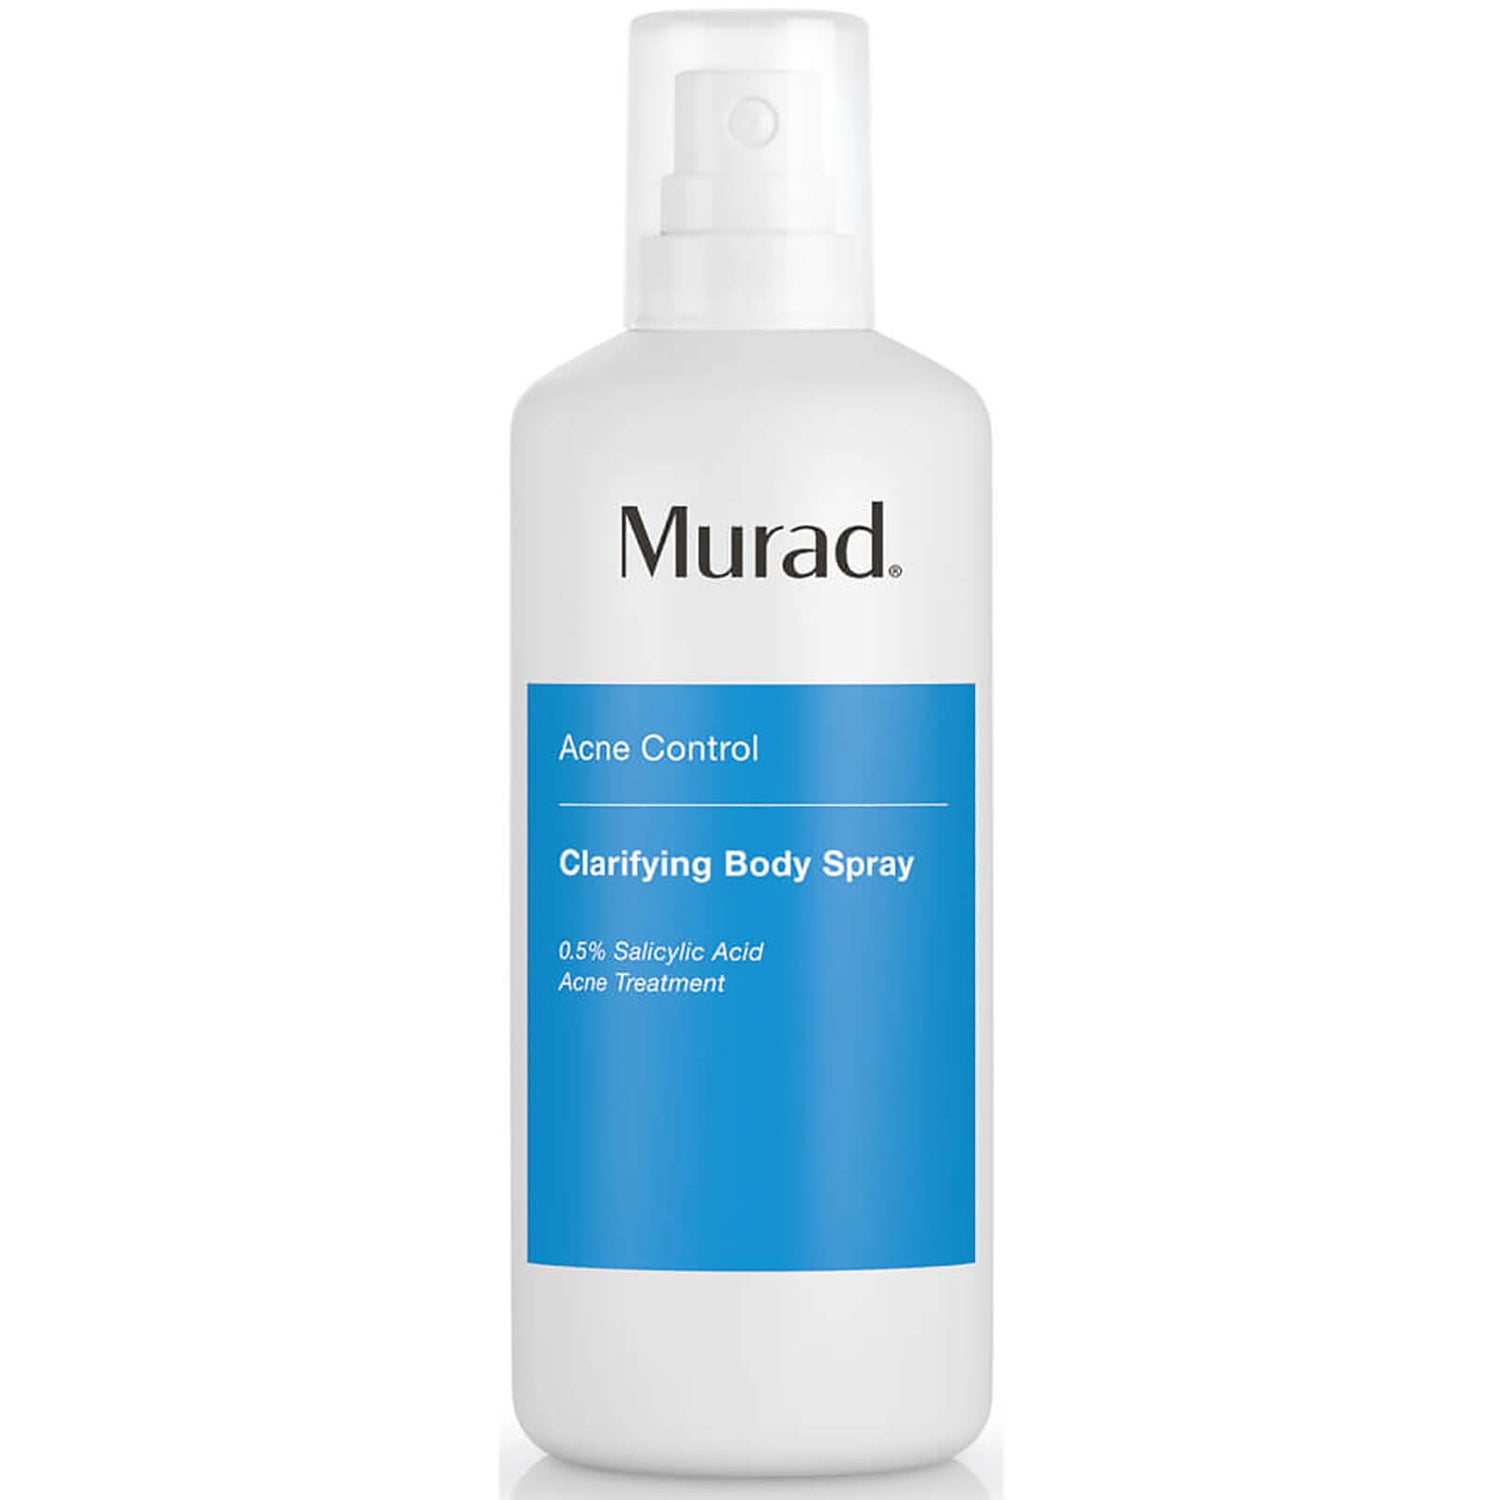 Murad Clarifying Body Spray